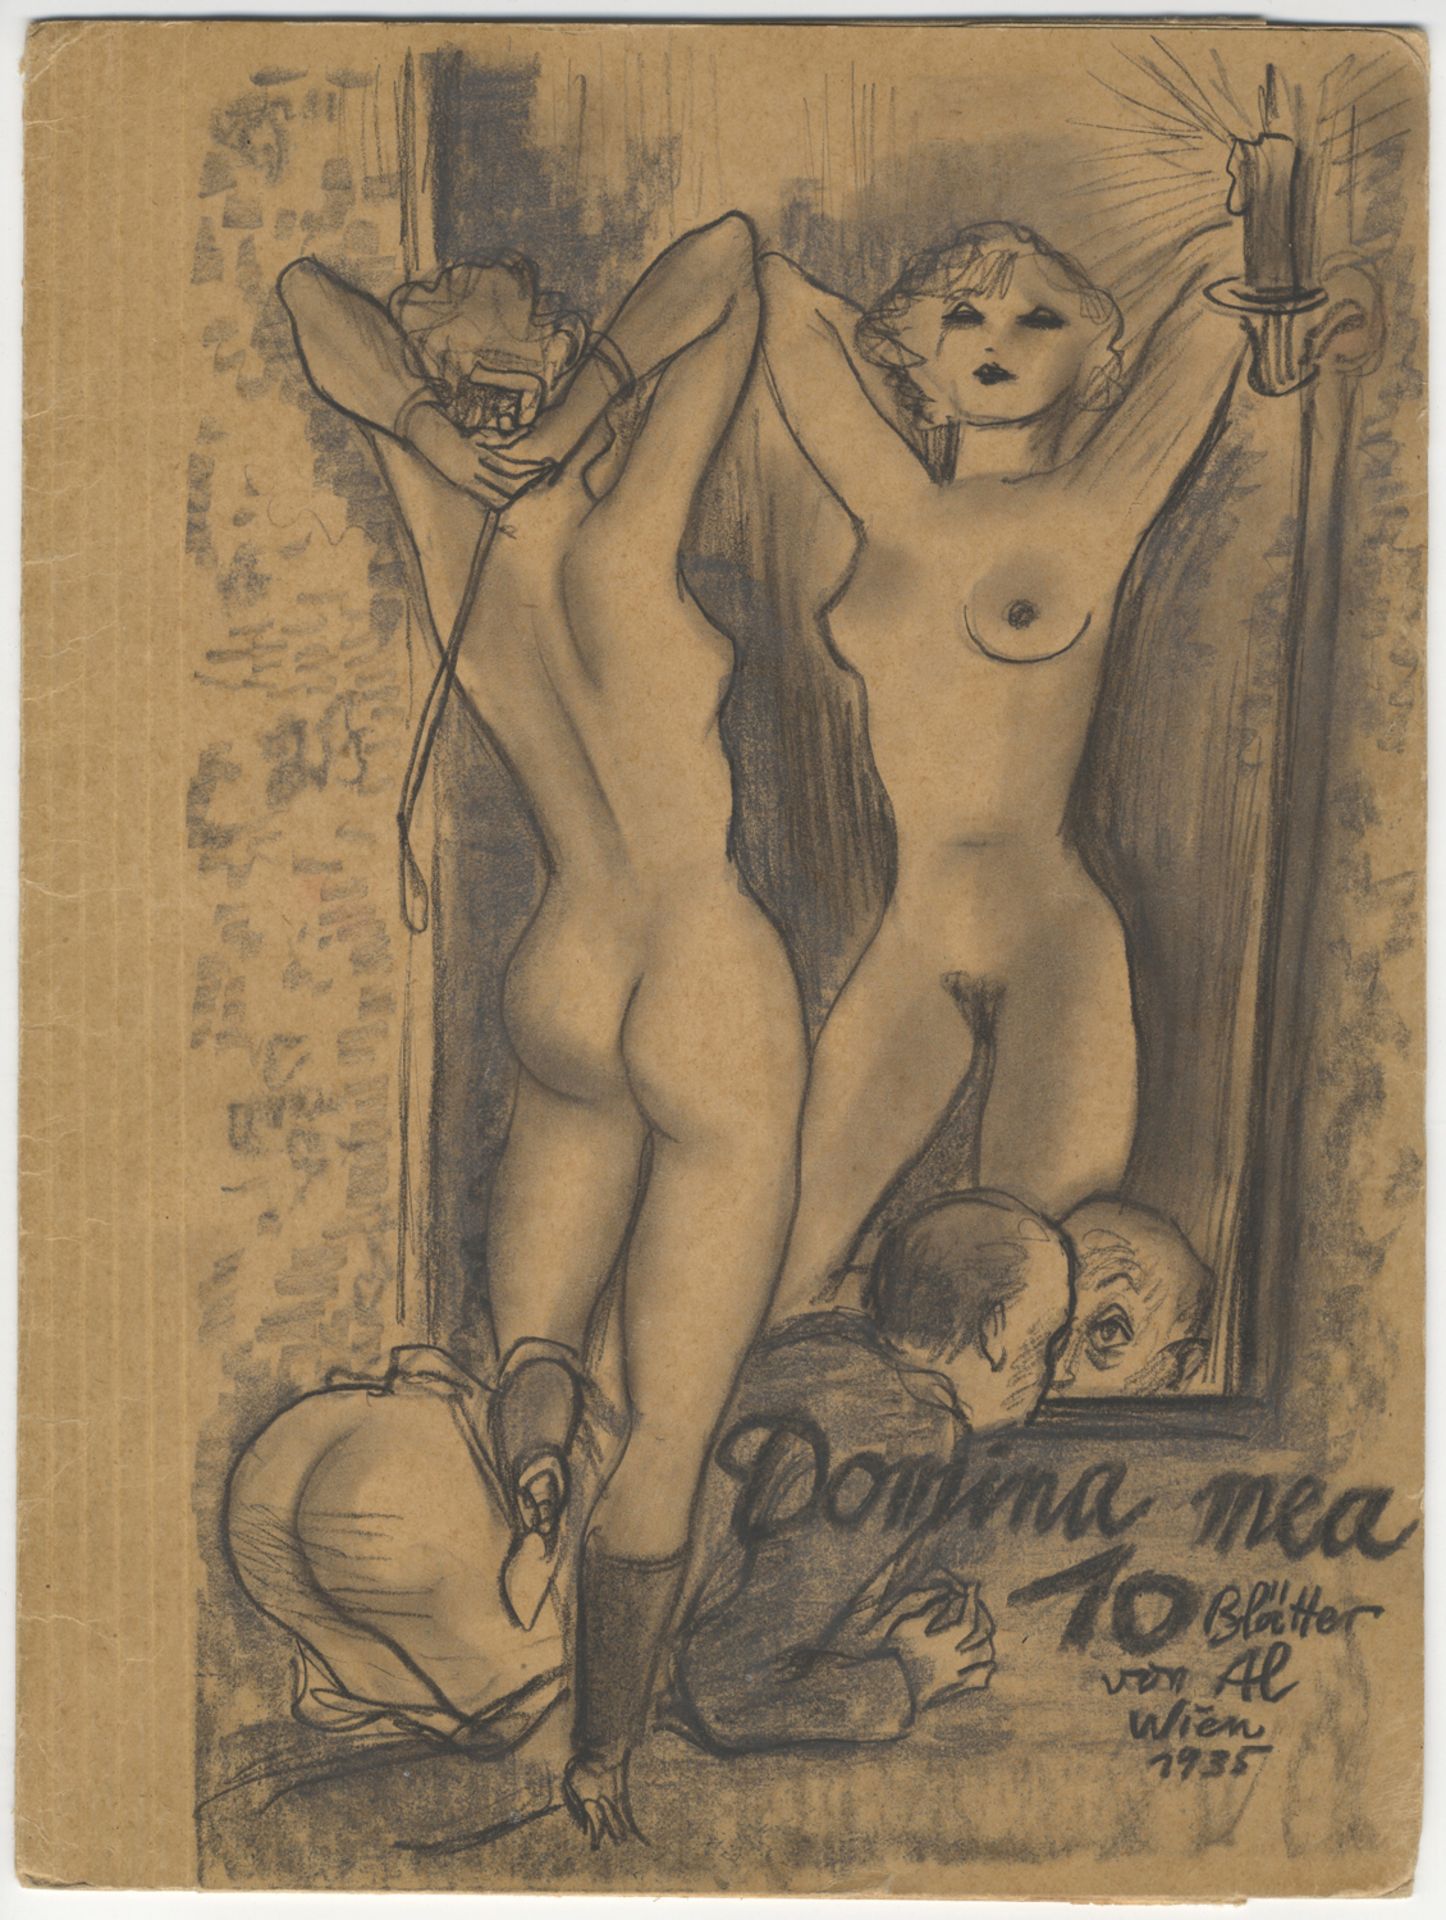 Alex SZEKELY. Domina Mea, 10 Blätter von Al, Wien, 1935. 11 dessins au crayon, 29 x [...]